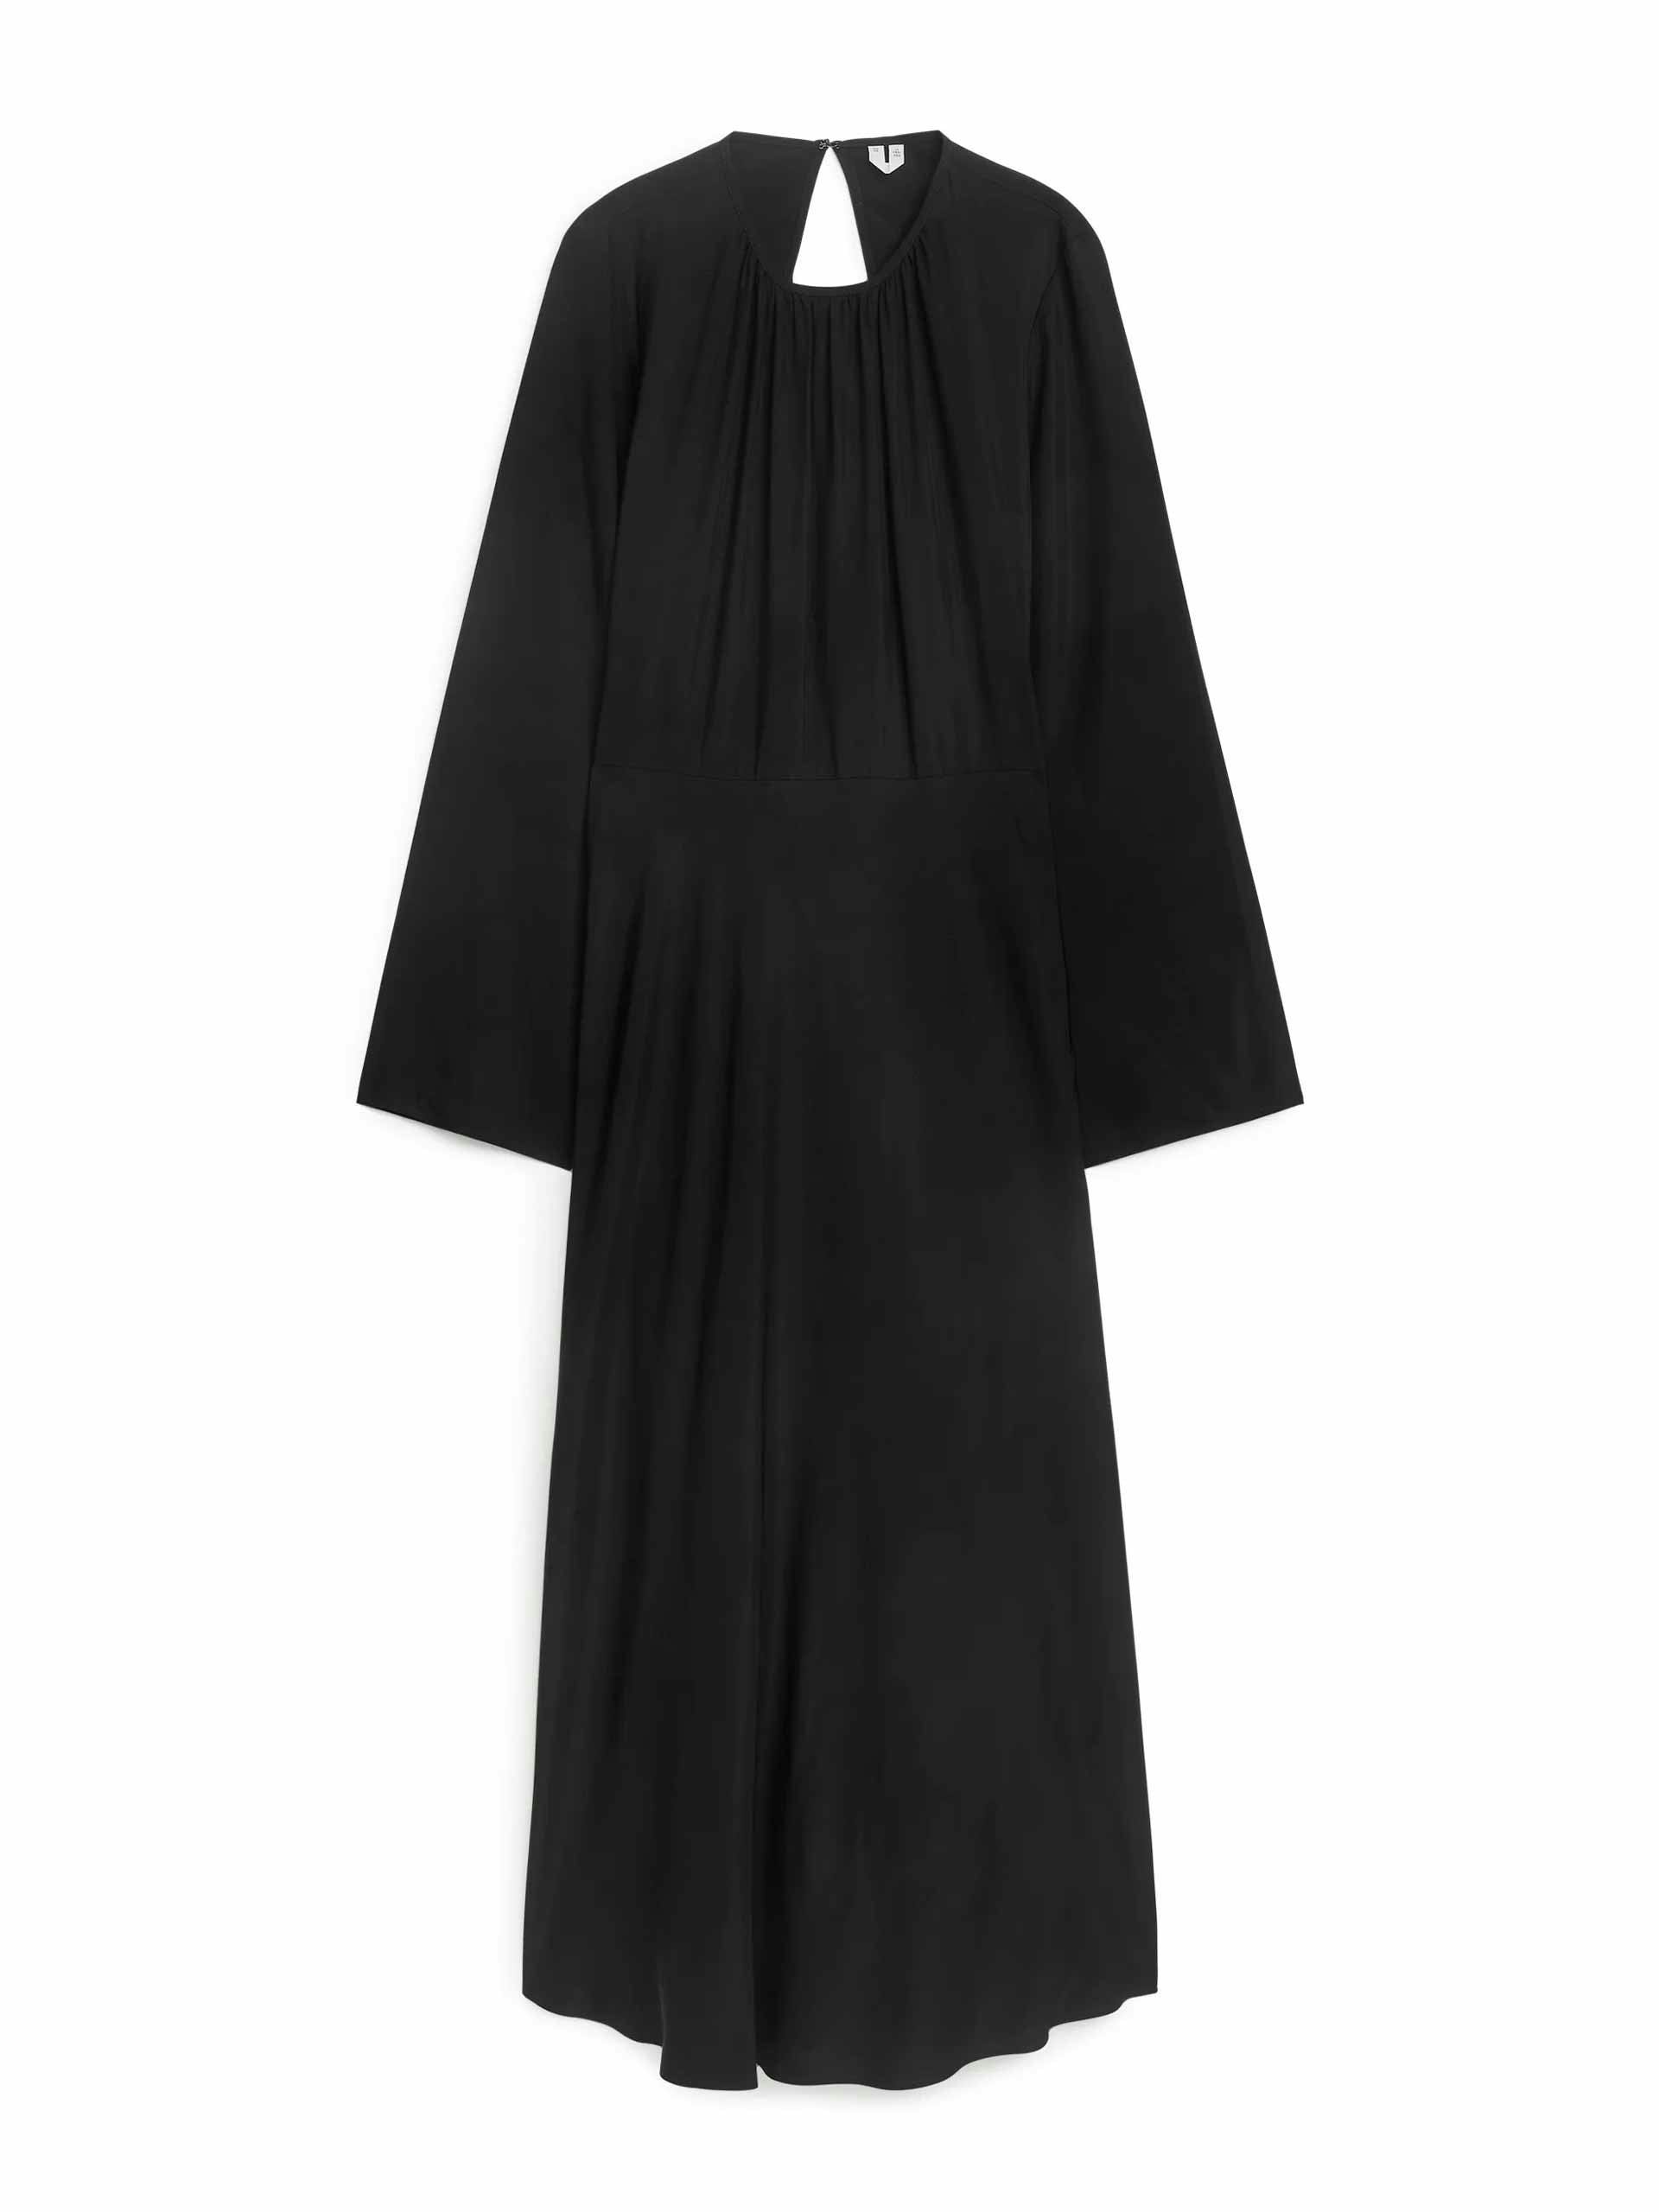 Open-back black dress